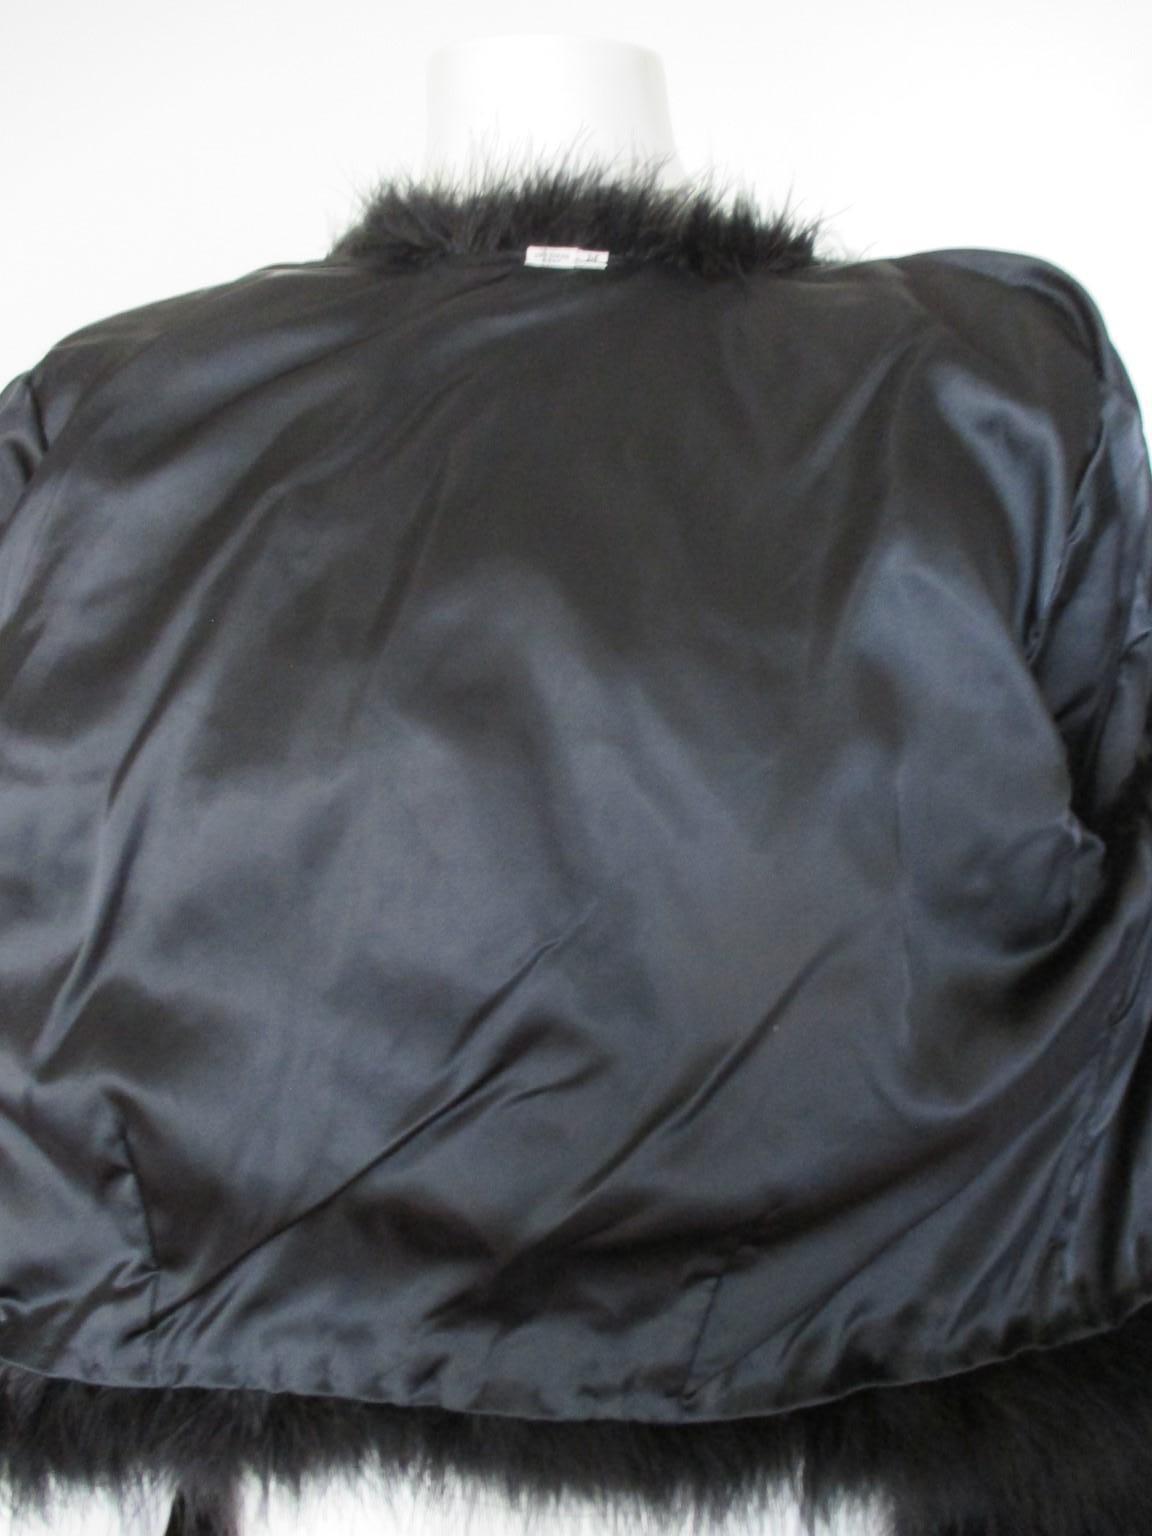 Schwarzer Straußenfeder Pelz Bolero Jacke für Damen oder Herren im Angebot